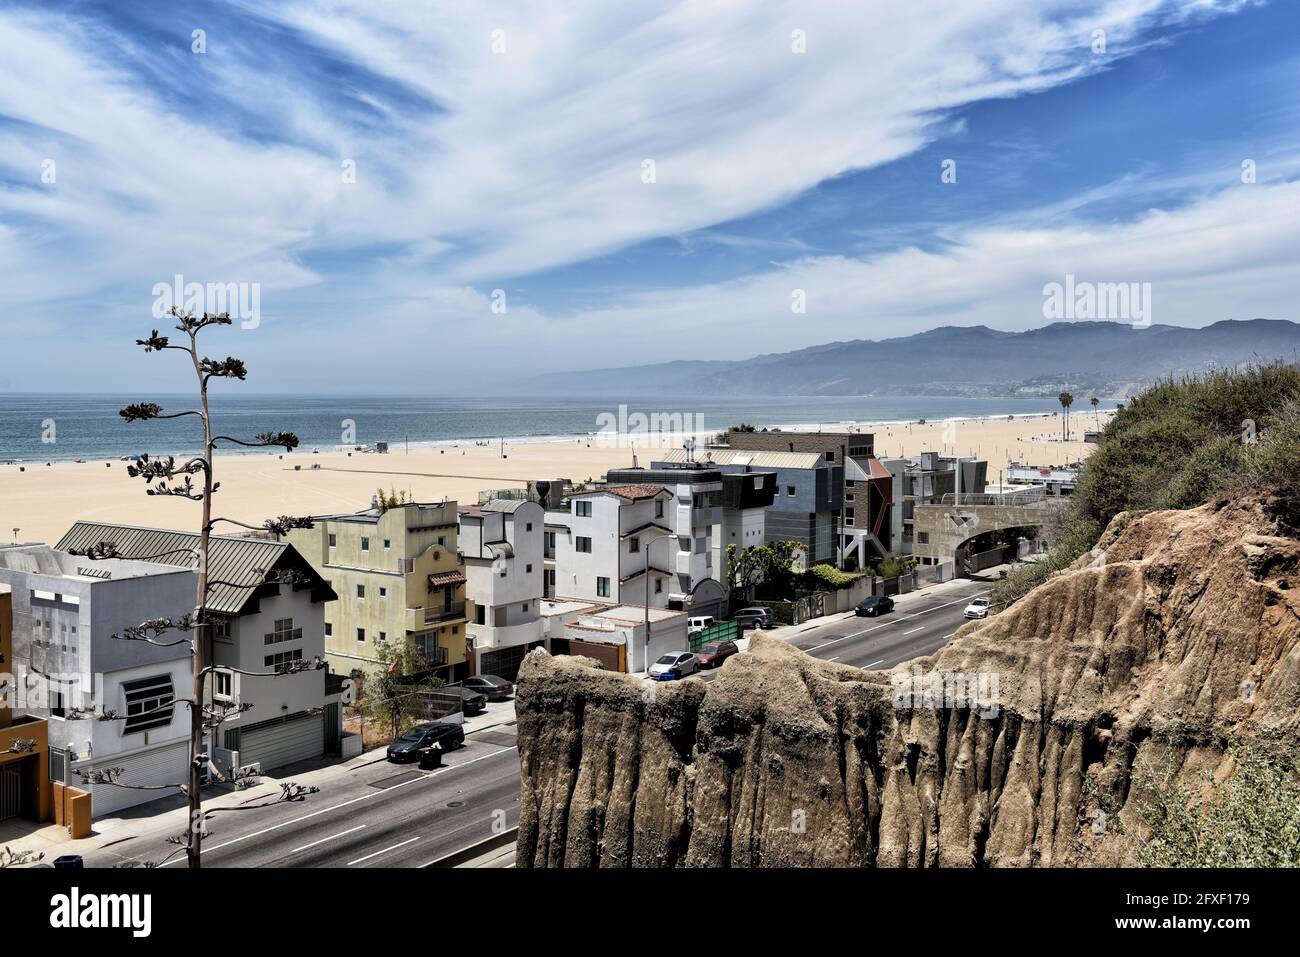 SANTA MONICA, KALIFORNIEN - 25. MAI 2021: Häuser am Pacific Coast Highway mit dem Strand im Hintergrund. Stockfoto